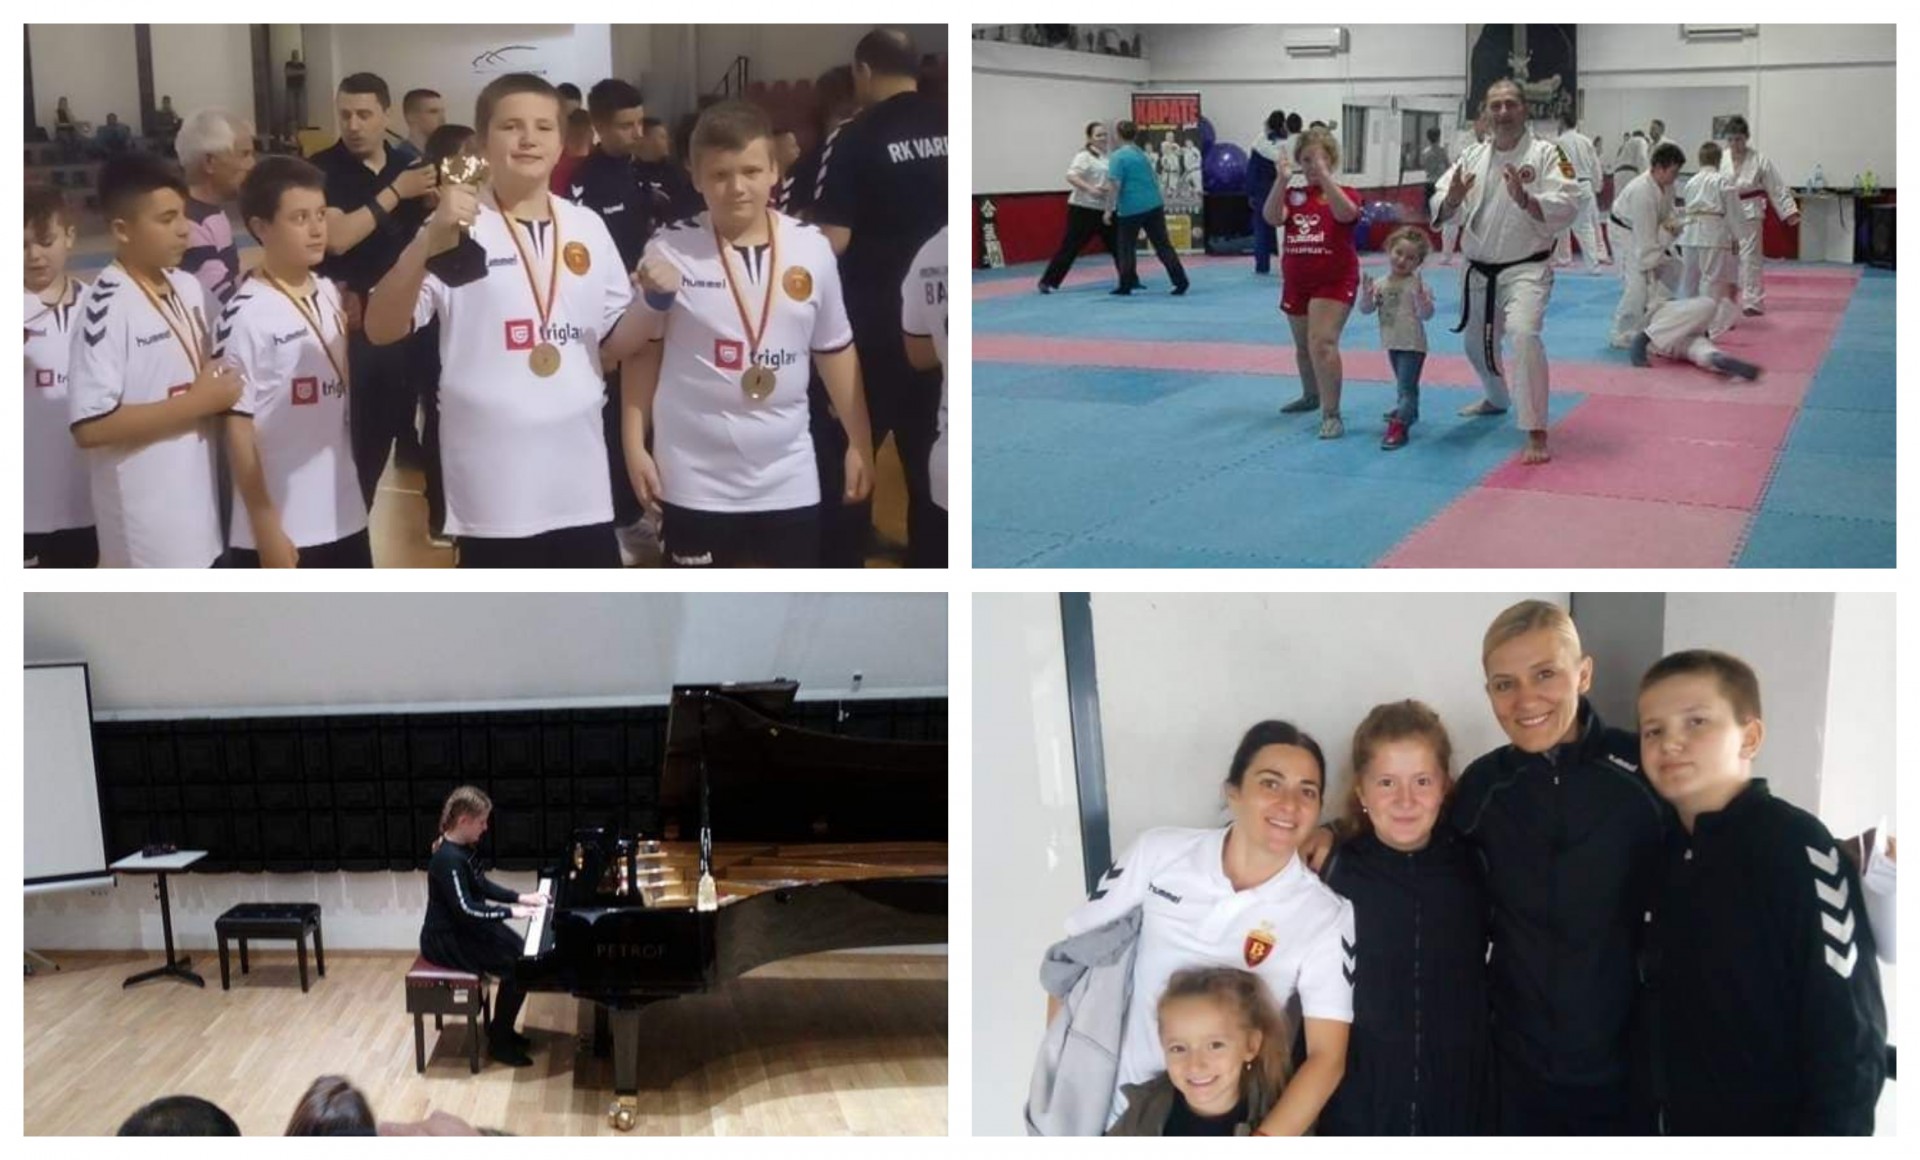 Аикидото е наш семеен спорт: Интервју со Дамјан, Софија и Магдалена Стојковски